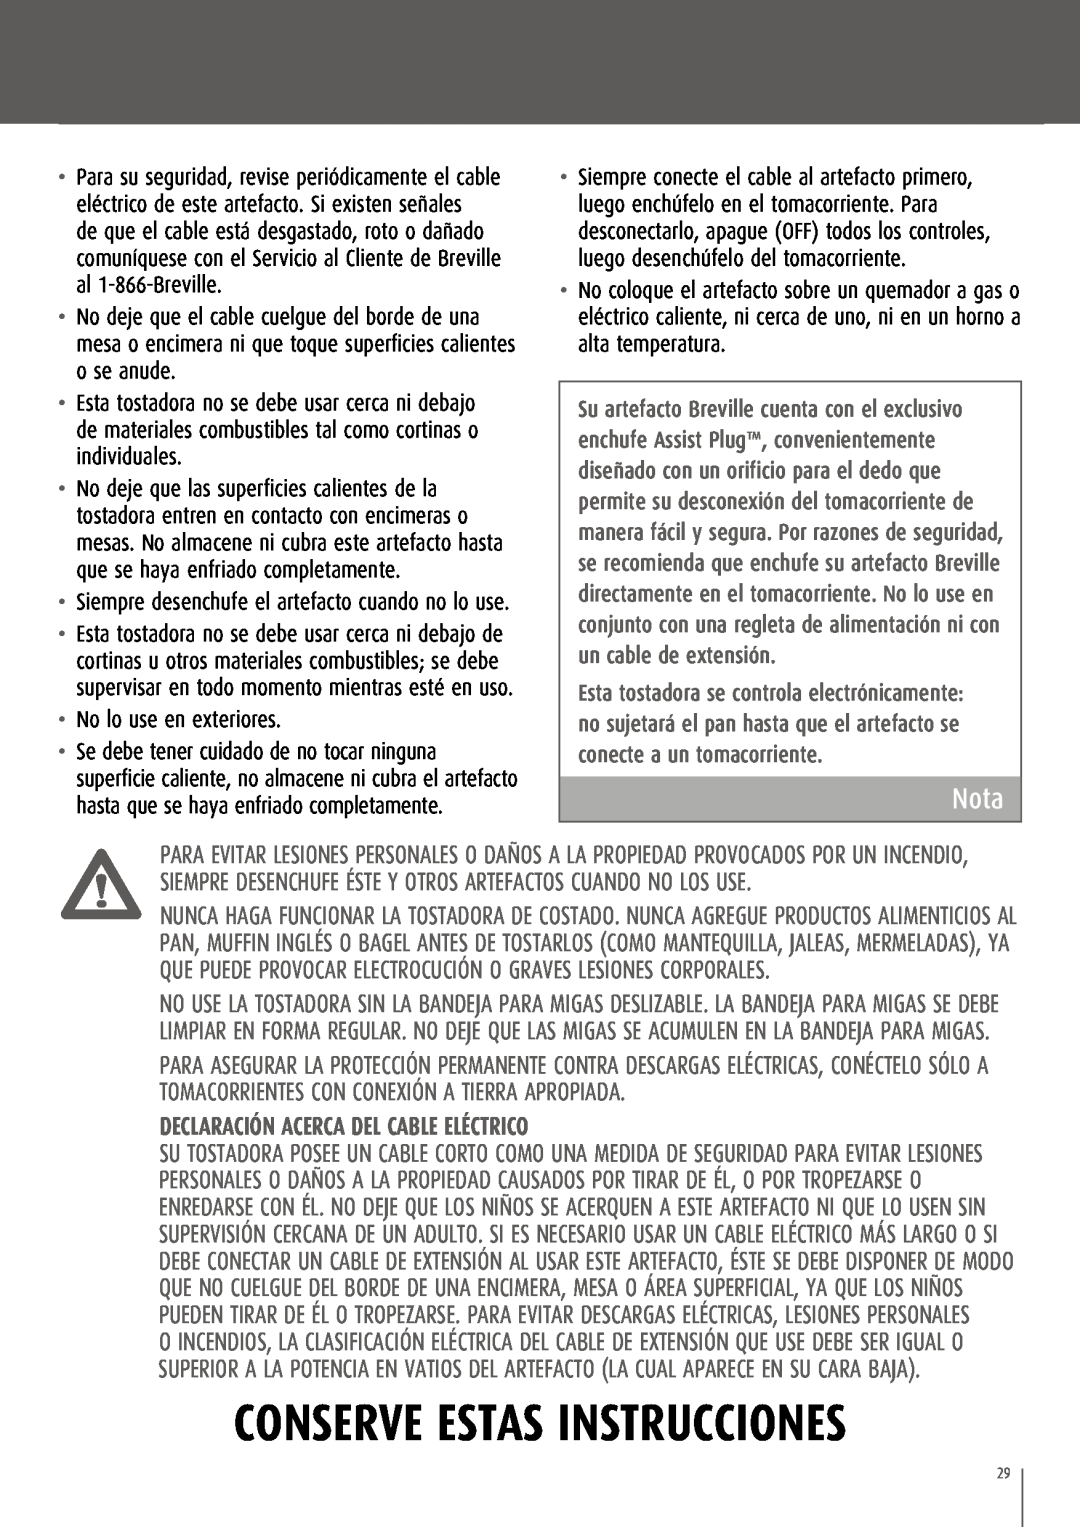 Breville CT70XL/A manual Nota, Declaración acerca del cable eléctrico, Conserve Estas Instrucciones 